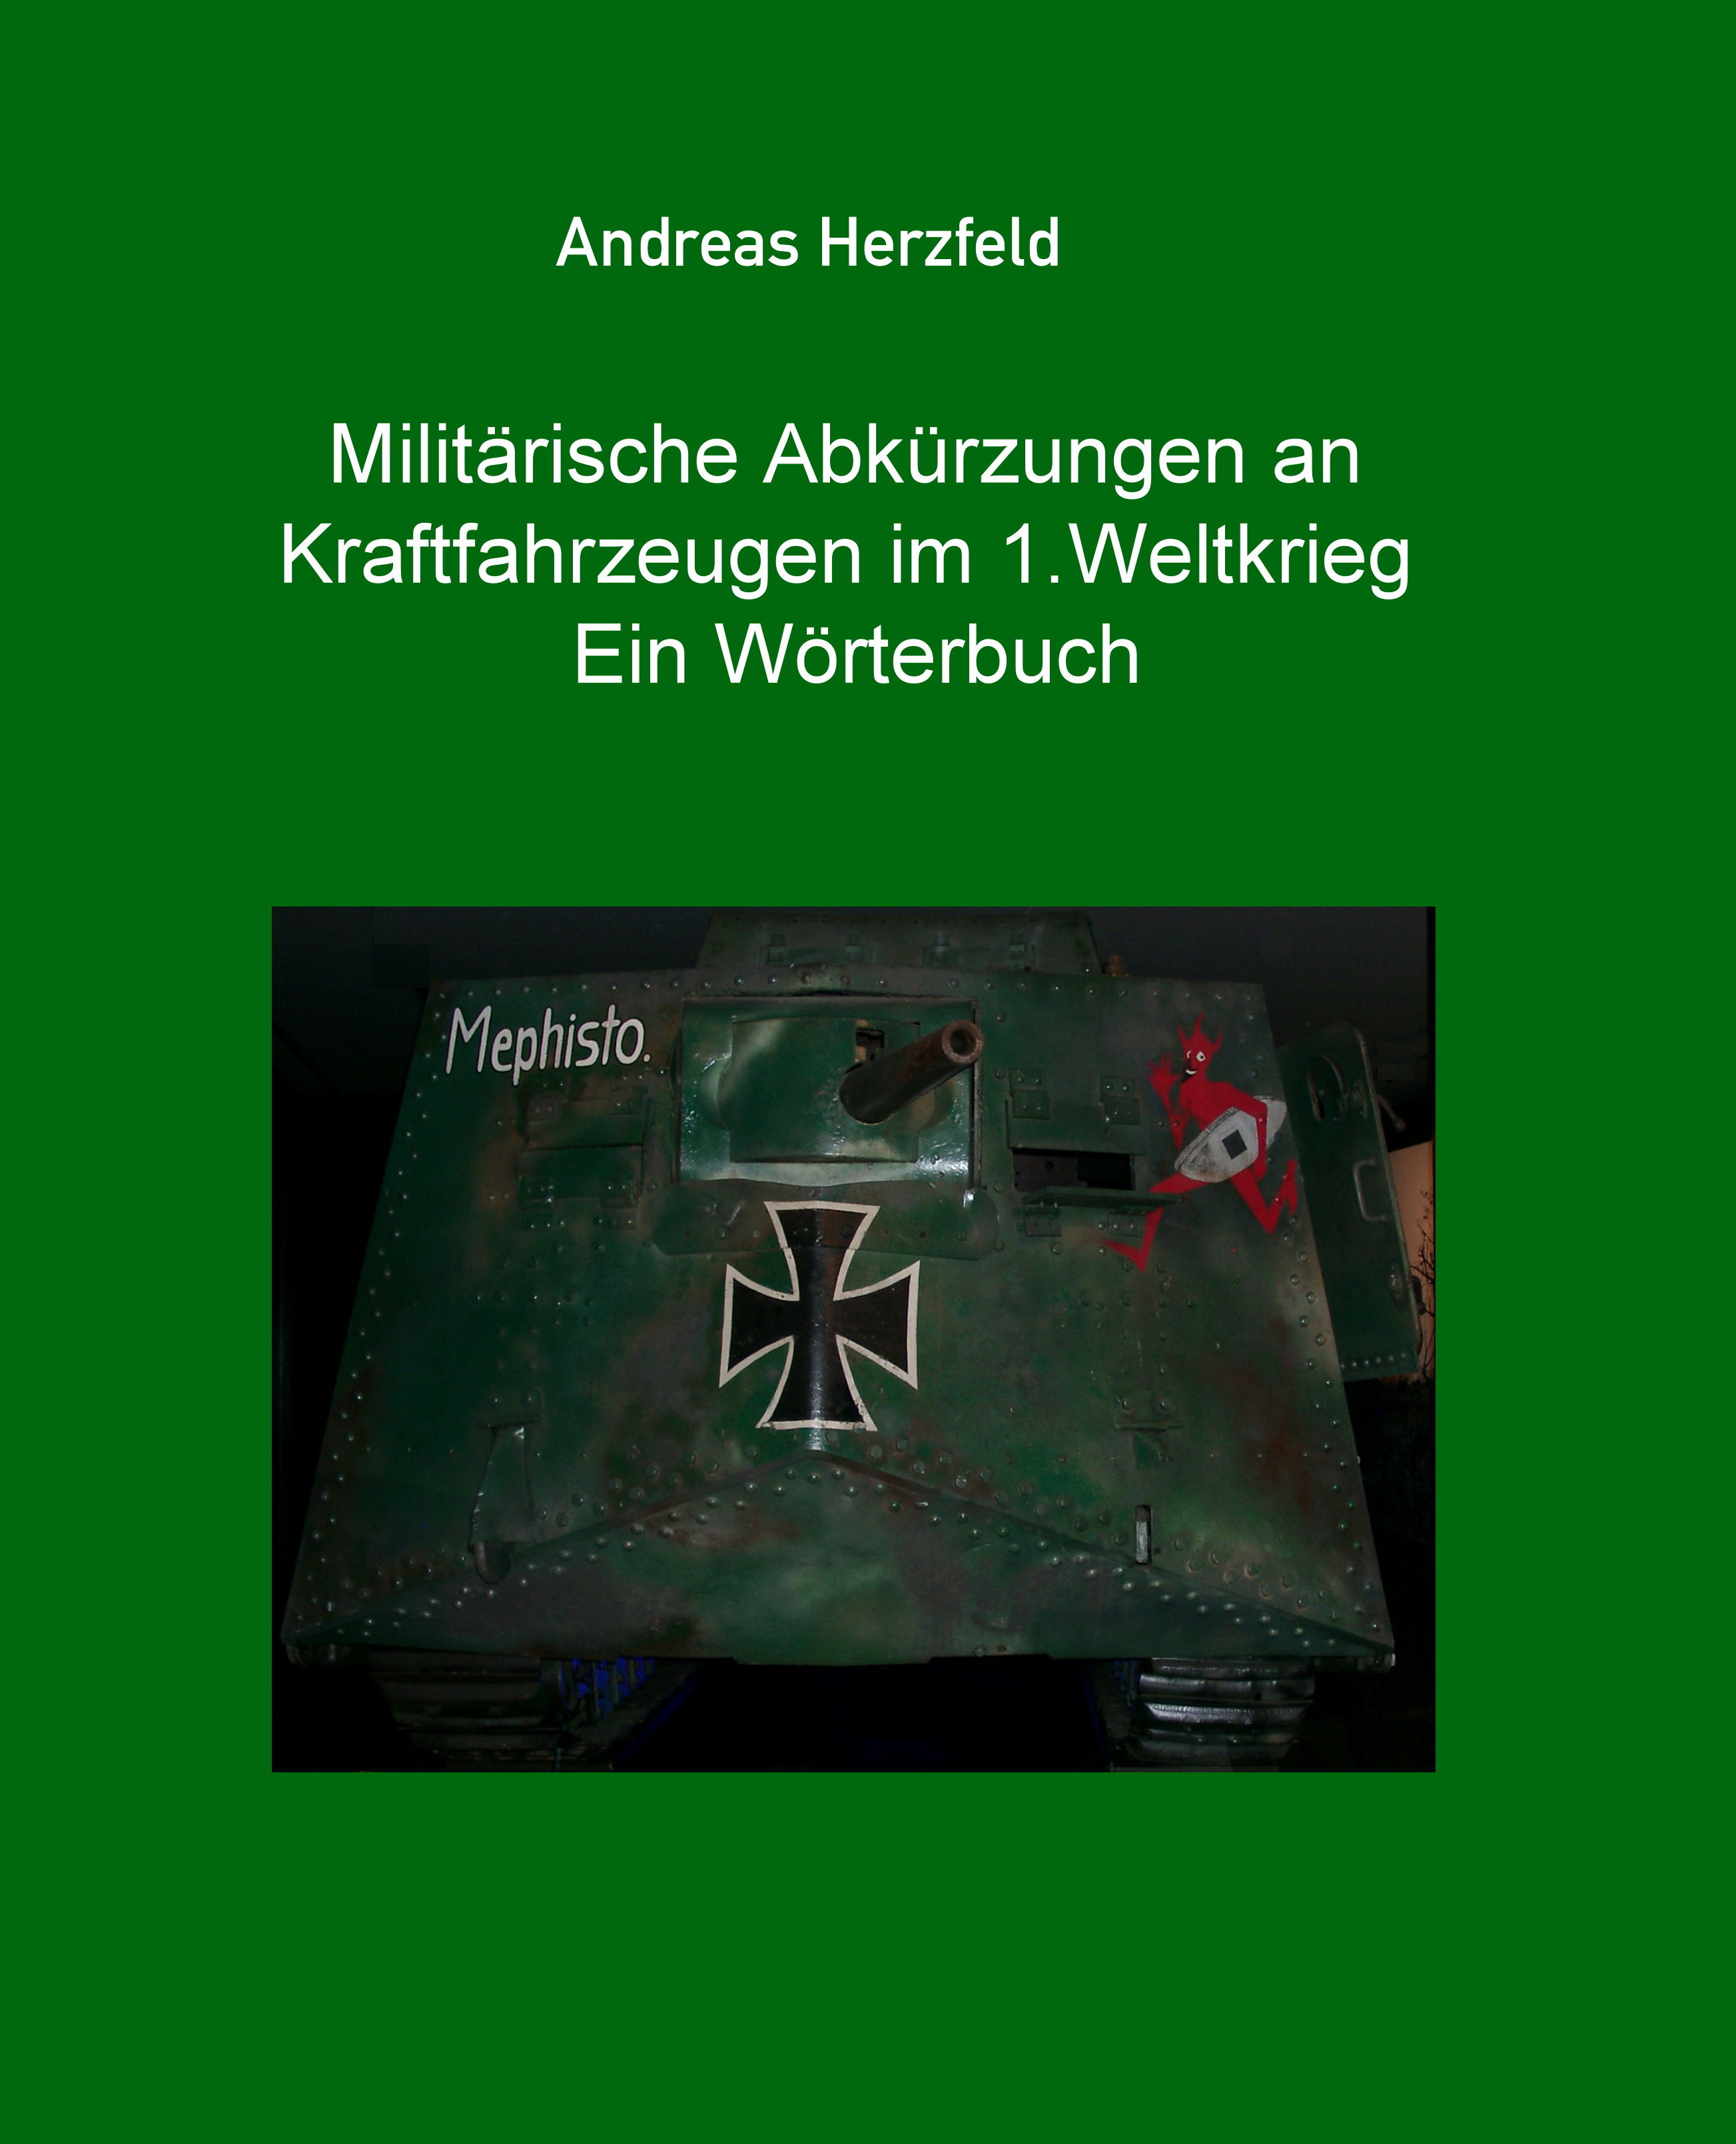 File:Deutsches Kfz-Kennzeichen für historische Fahrzeuge (H-Kennzeichen).jpg  - Simple English Wikipedia, the free encyclopedia